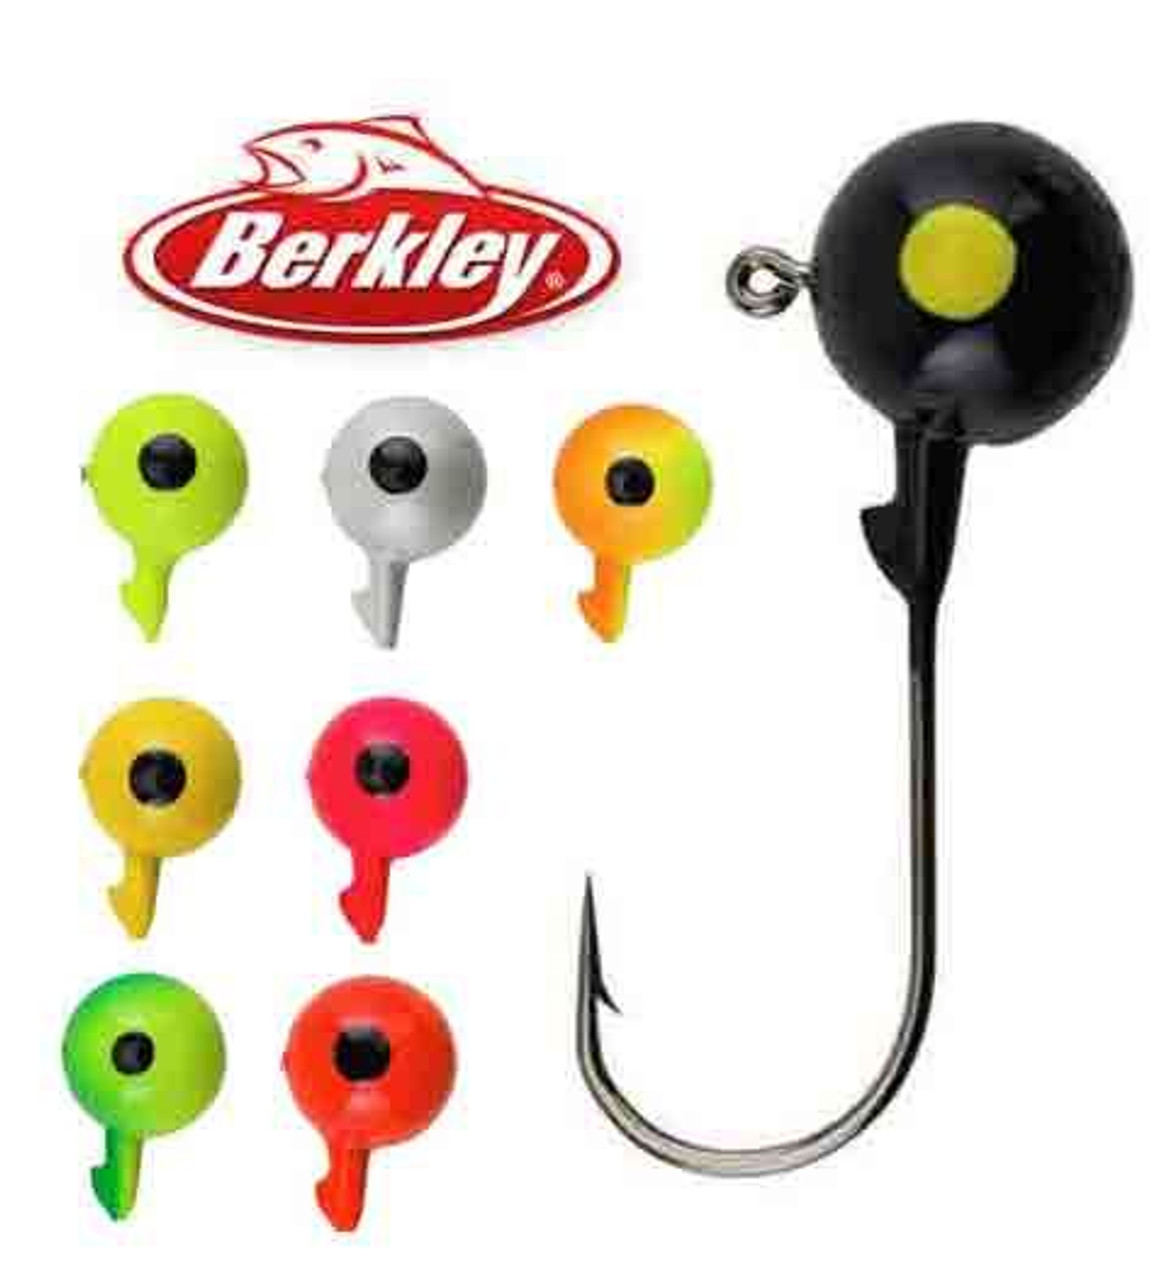 Berkley Essentials Round Ball Jig, 2/0 Hook, 1/4 oz, 6 Pack